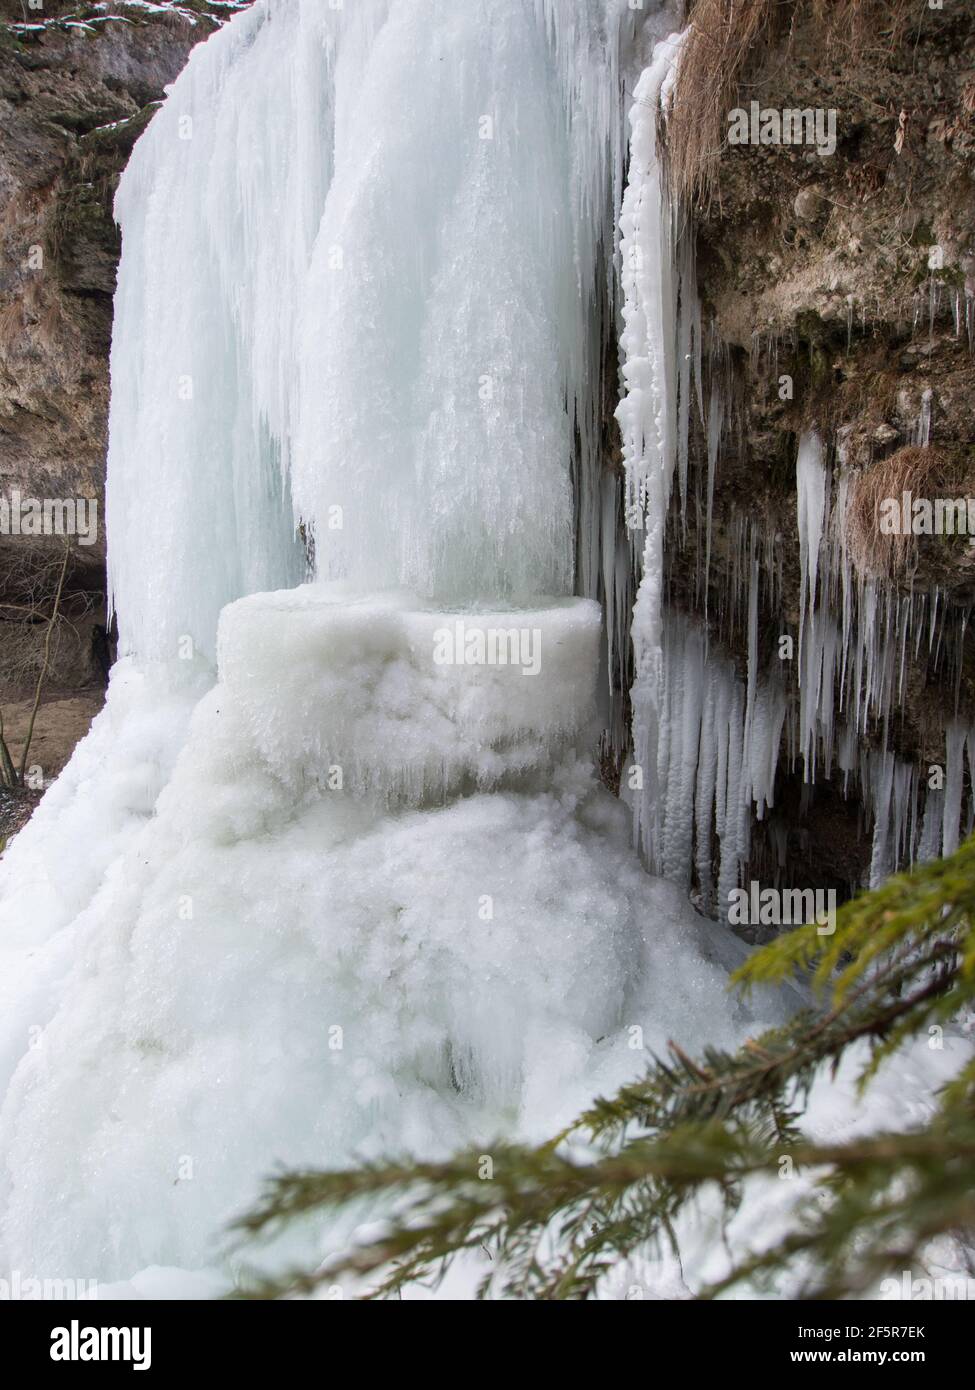 Gefrorener Wasserfall mit Schnee im Winter - Frozen waterfall with snow in winter Stock Photo